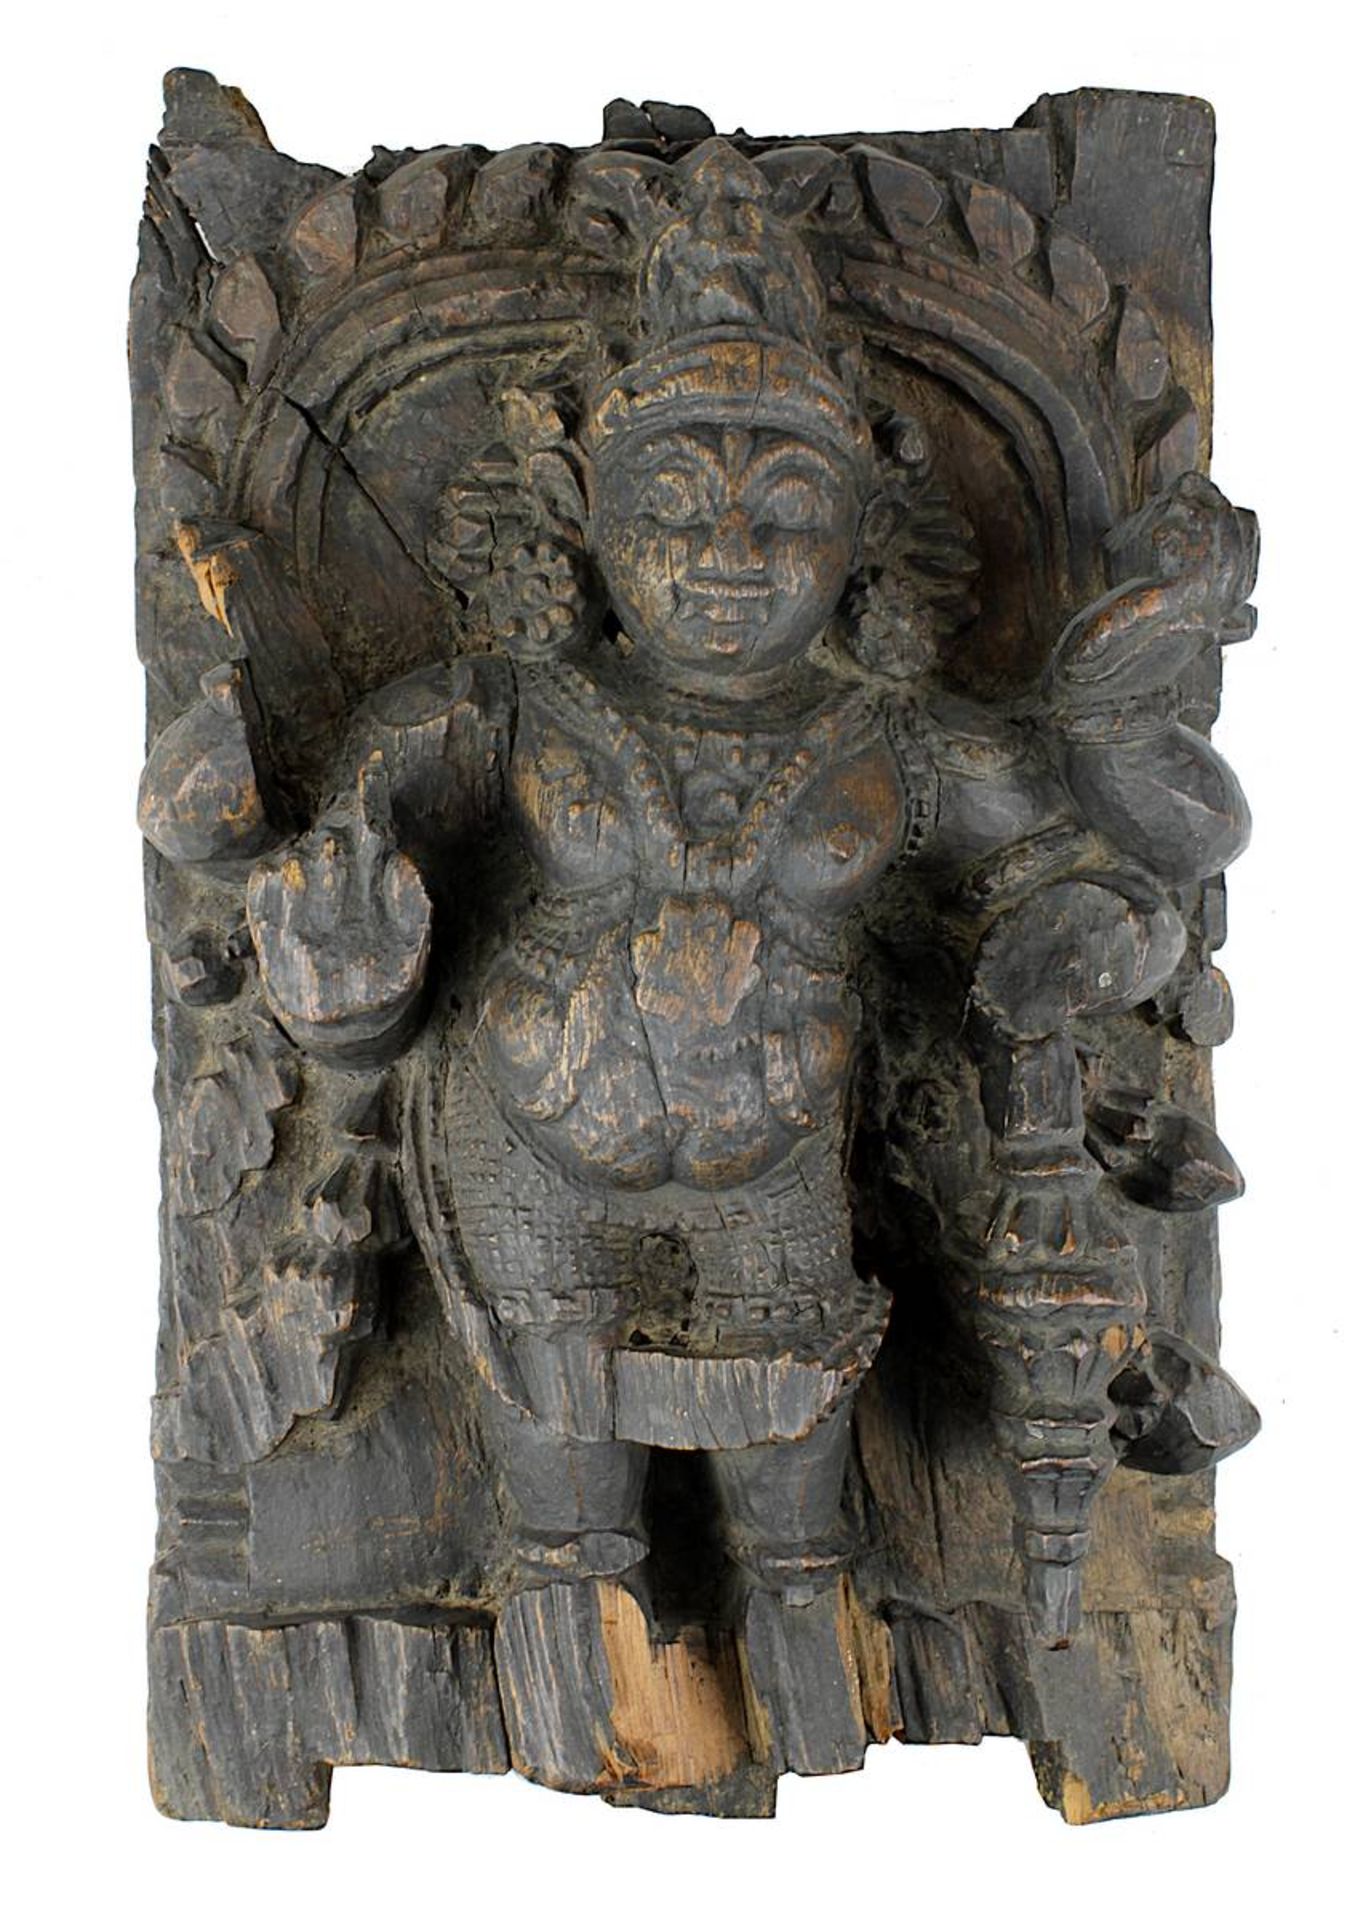 Holzrelief des Gottes Vishnu, Südindien 18./19. Jh., aus schwerem Holz geschnitztes Relief der